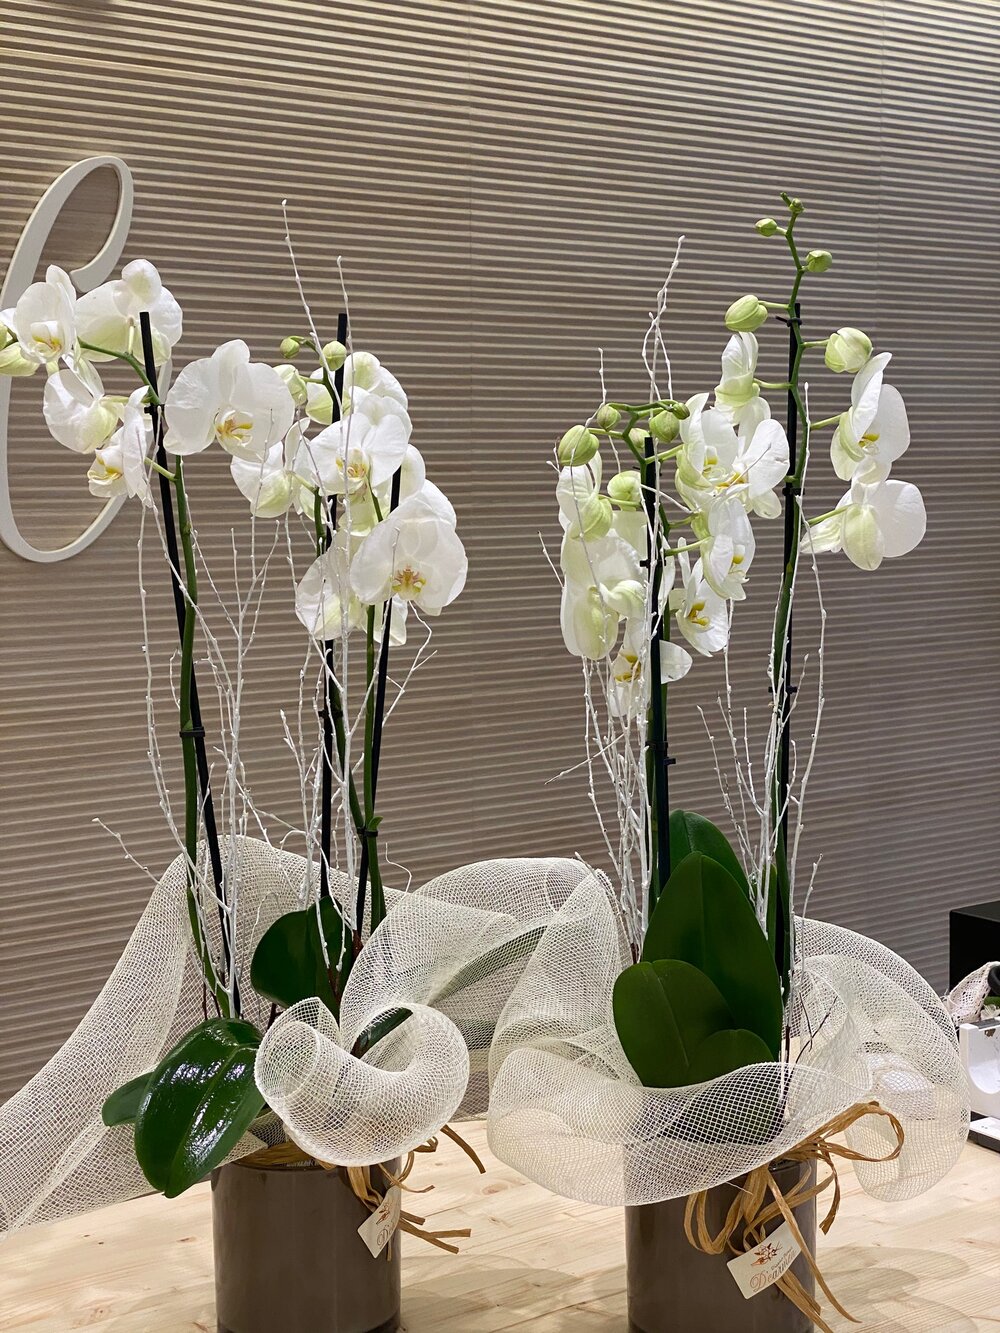 Orquídea natural — D'Carmen